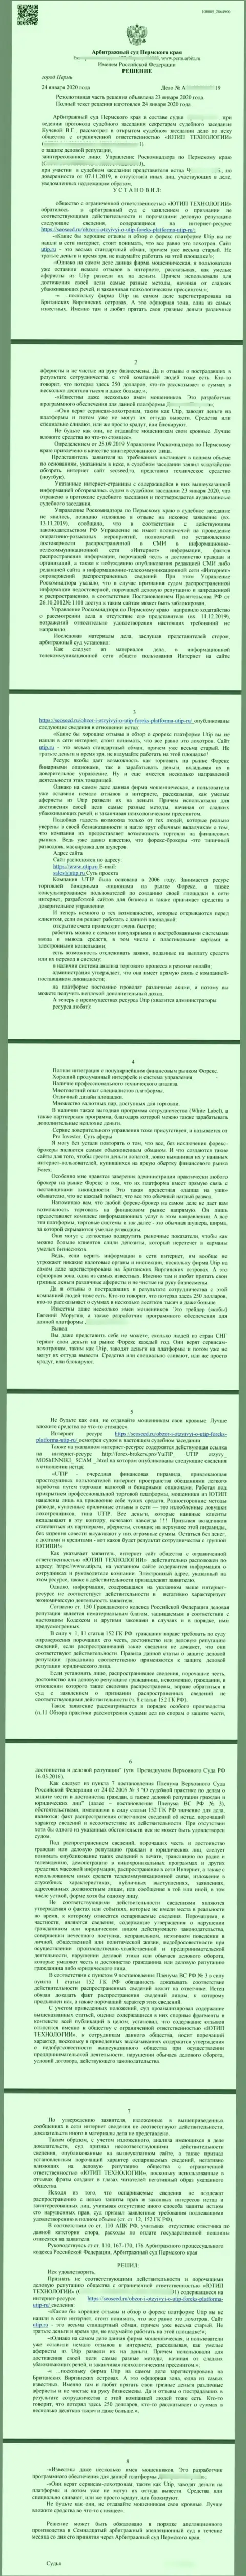 Судебный иск мошенников UTIP Ru, который оказался удовлетворенным самым справедливым судом в мире